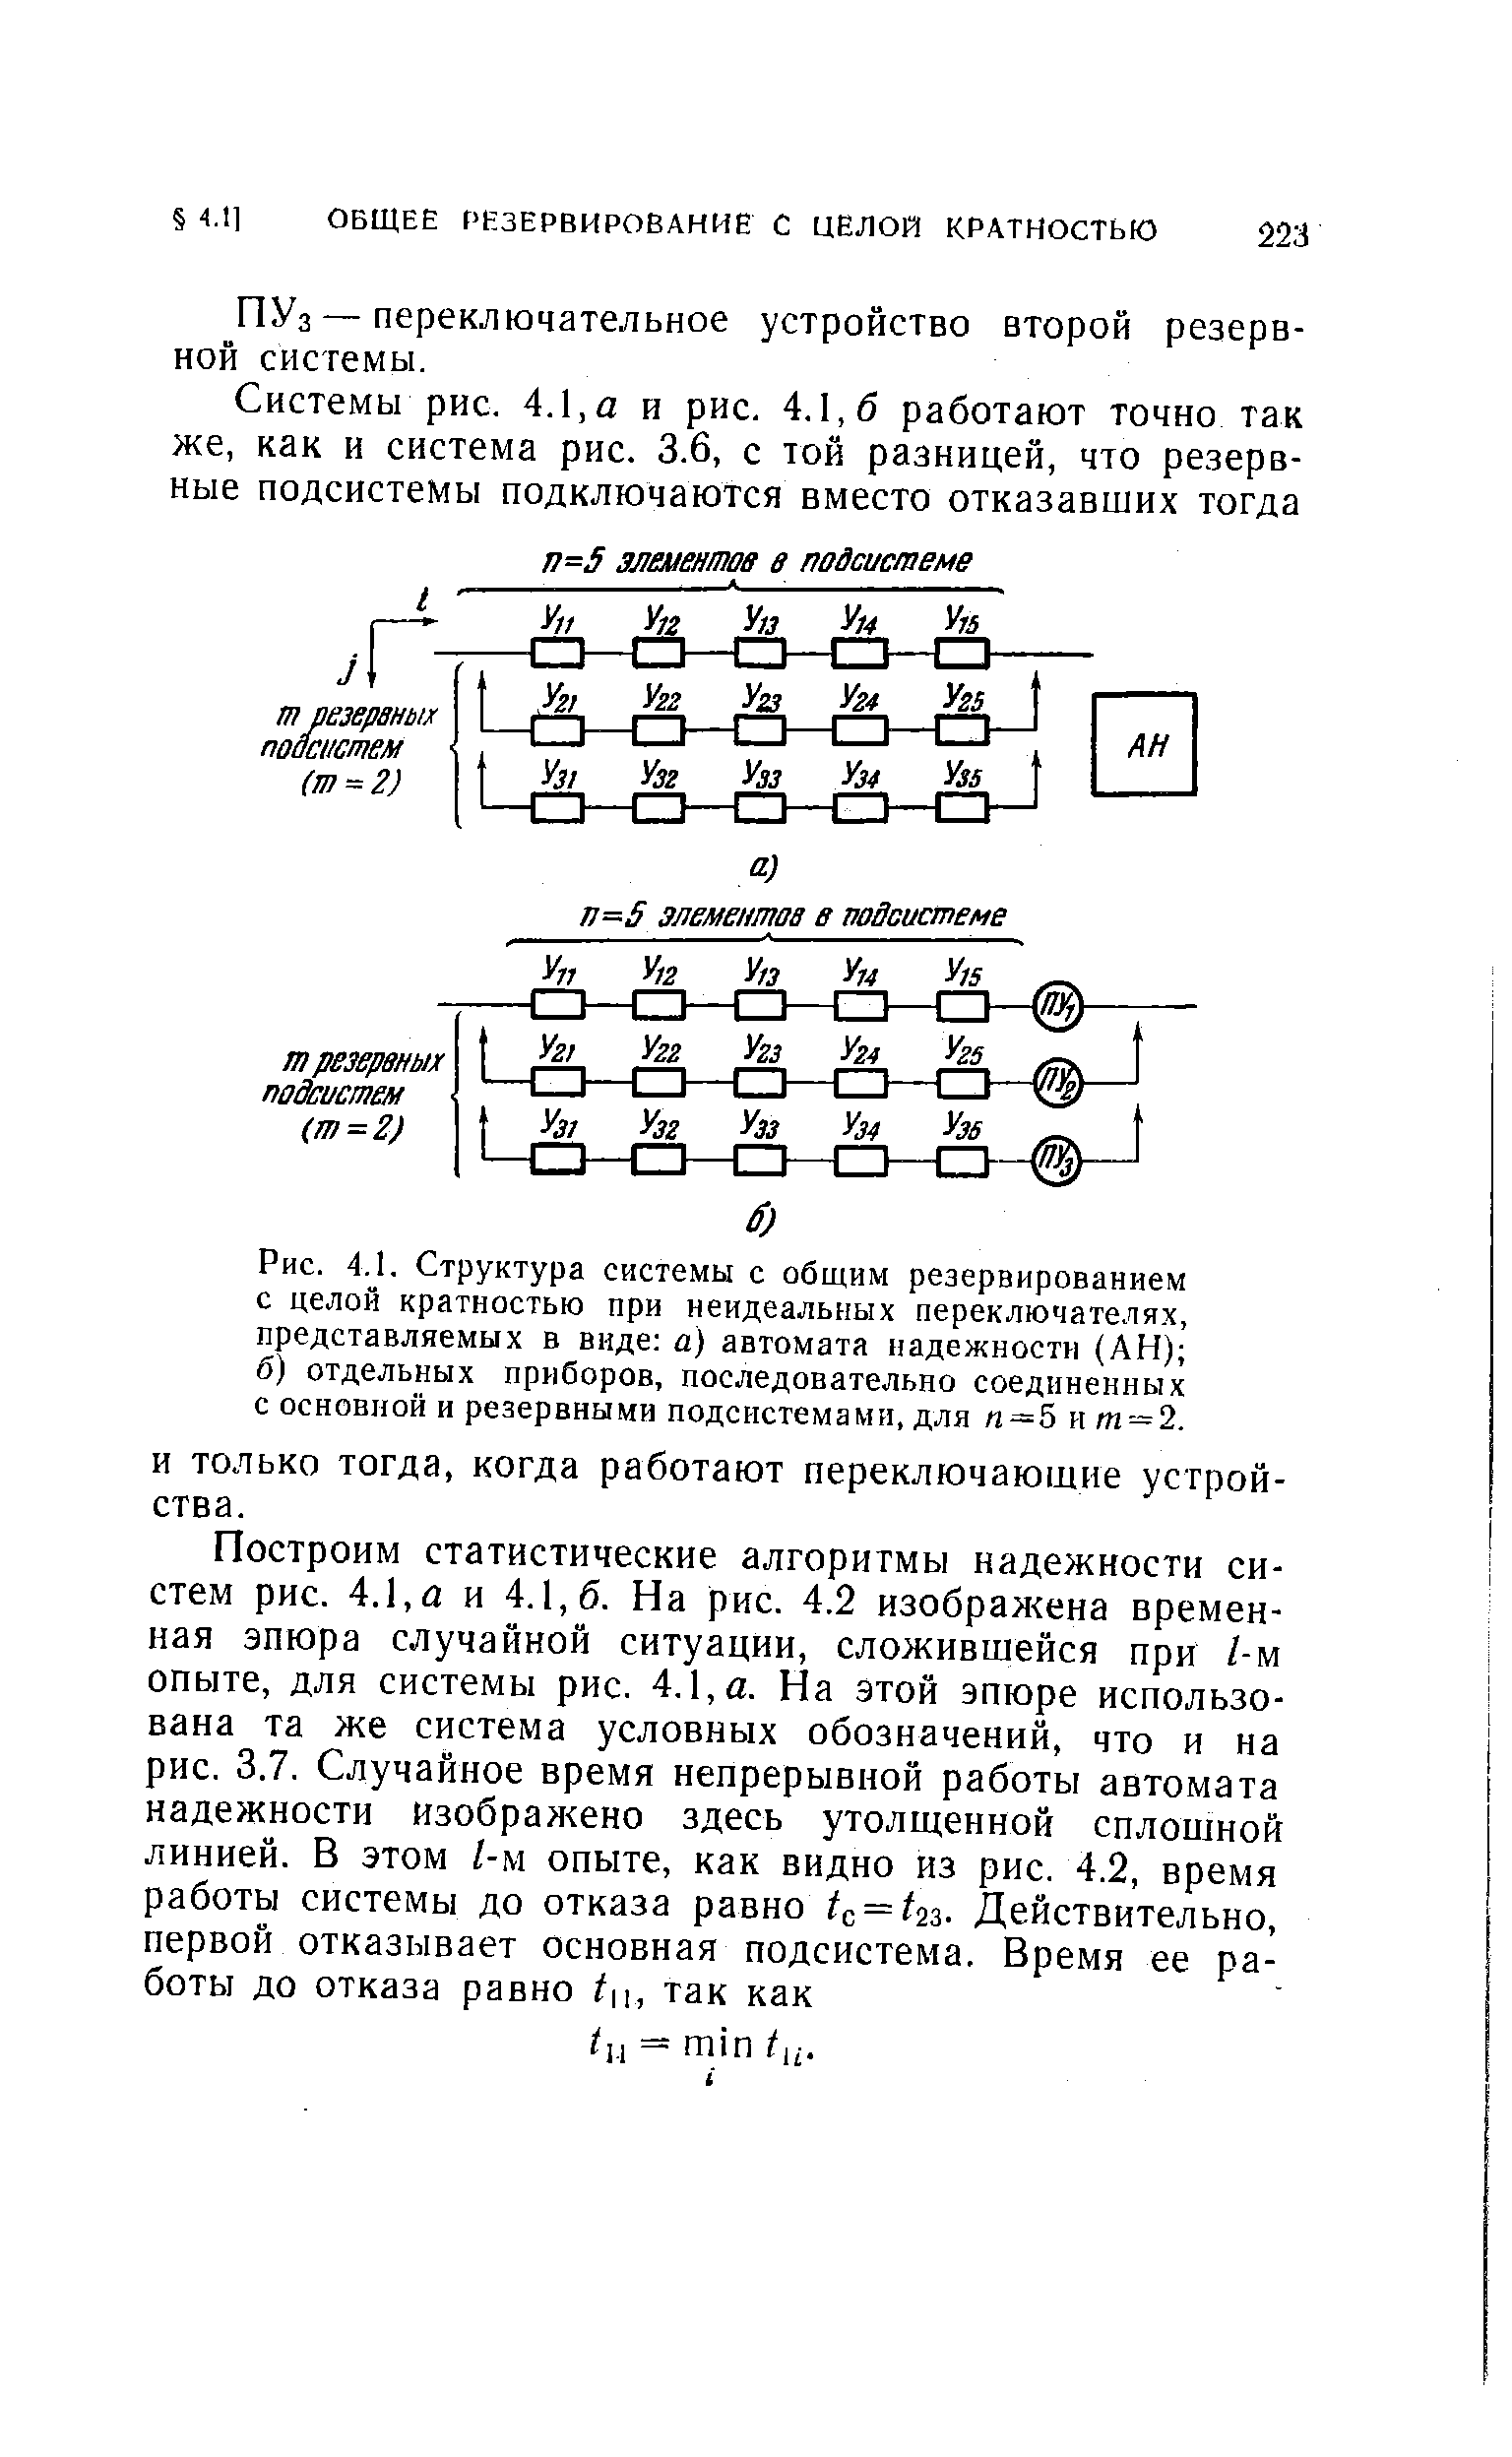 Рис. 4.1. Структура системы с общим резервированием с целой кратностью при неидеальыых переключателях, представляемых в виде а) автомата надежности (АН) б) отдельных приборов, последовательно соединенных с основной и резервными подсистемами, для п=5 и т = 2.
